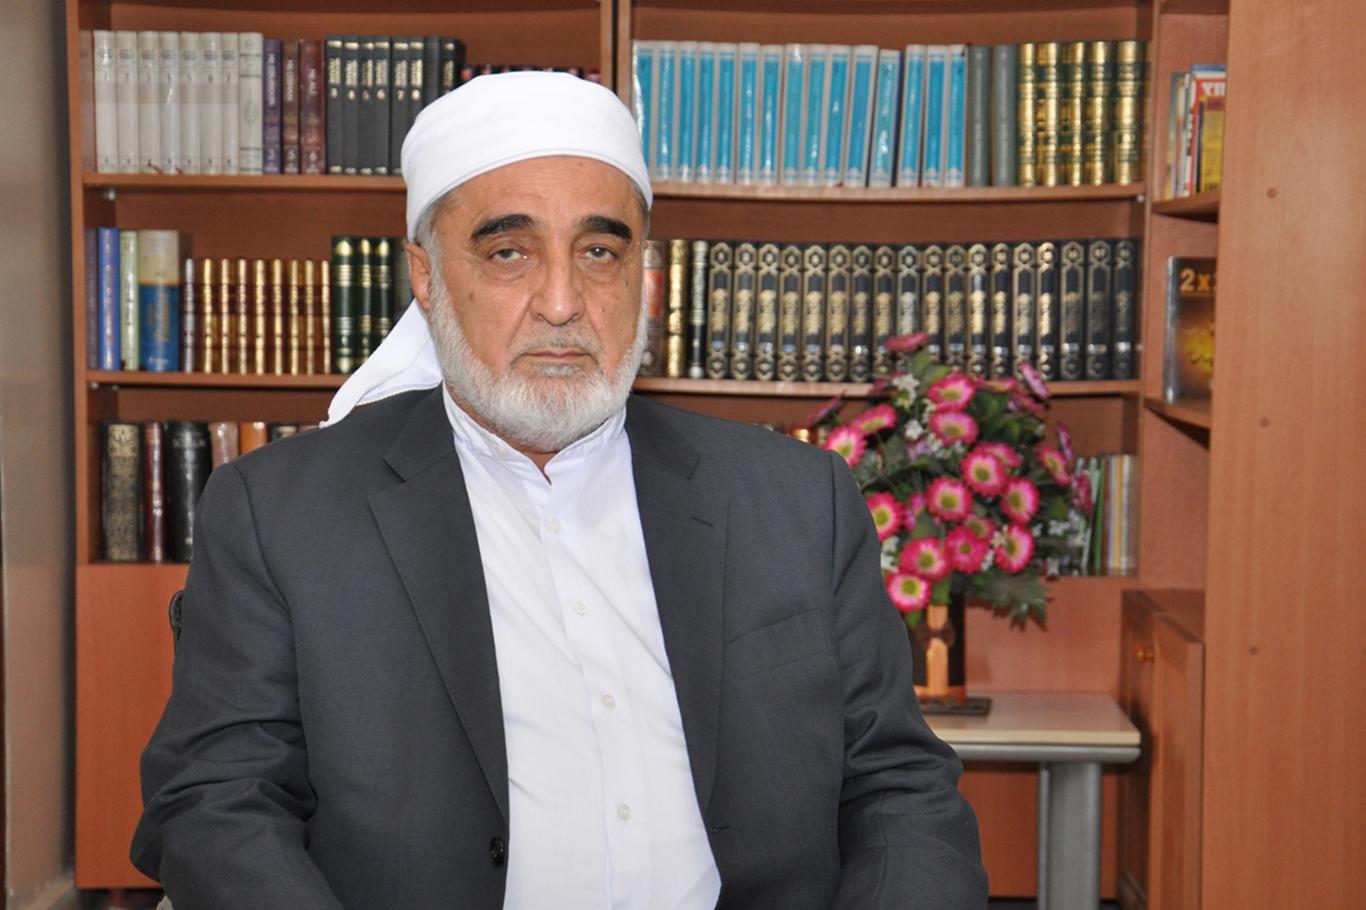 İTTİHADUL ULEMA Genel Başkanı Kılıçarslan: “Müslümanlar zalimlere karşı ittifak etmeli”